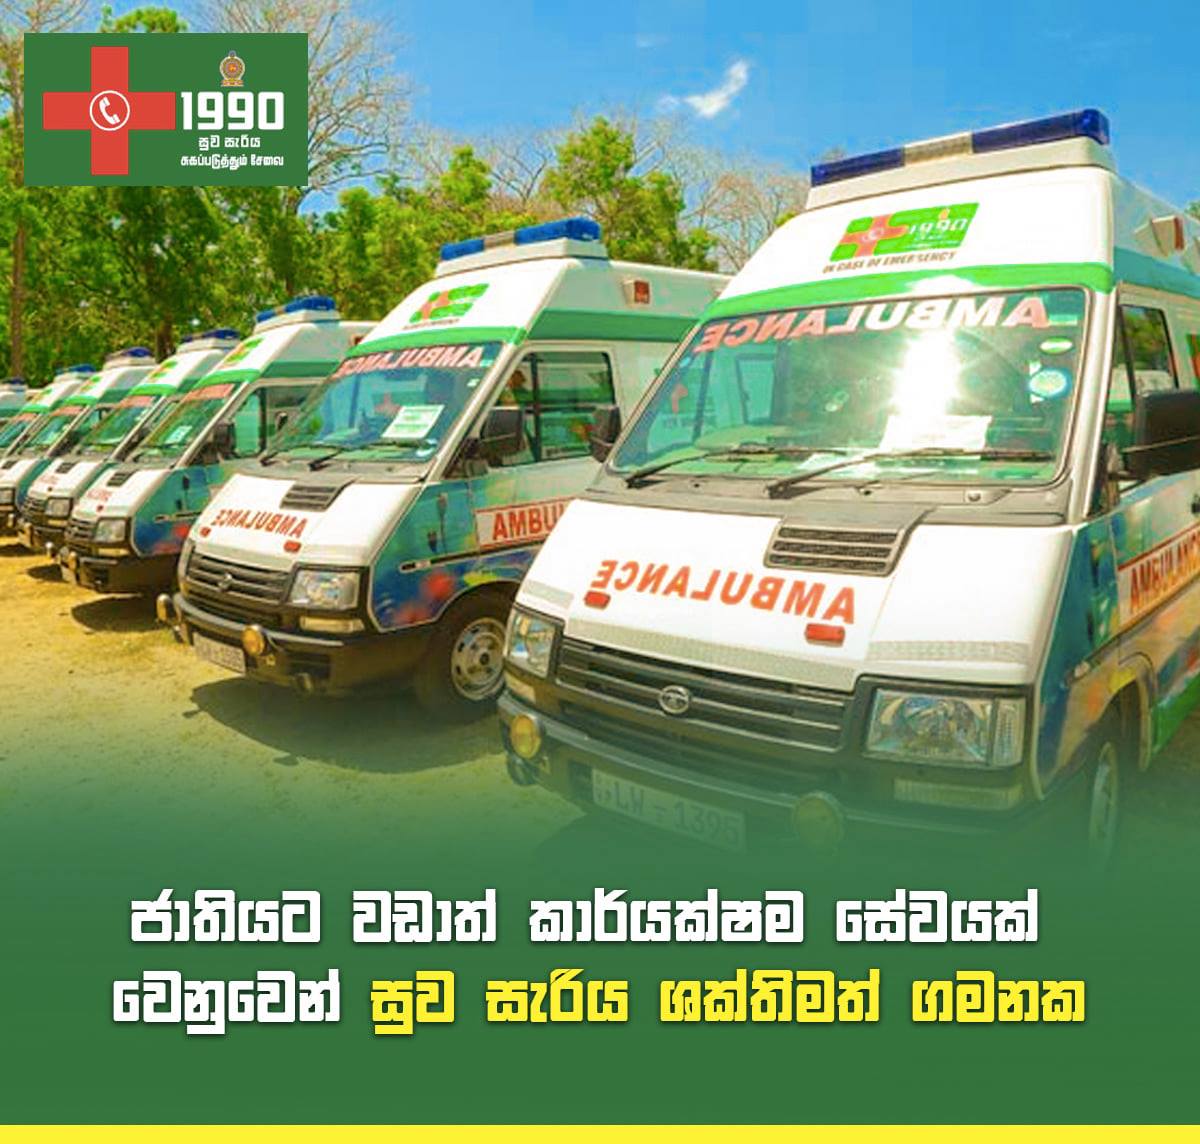 World Bank hails ‘Suwa Seriya’ ambulance service for saving countless lives